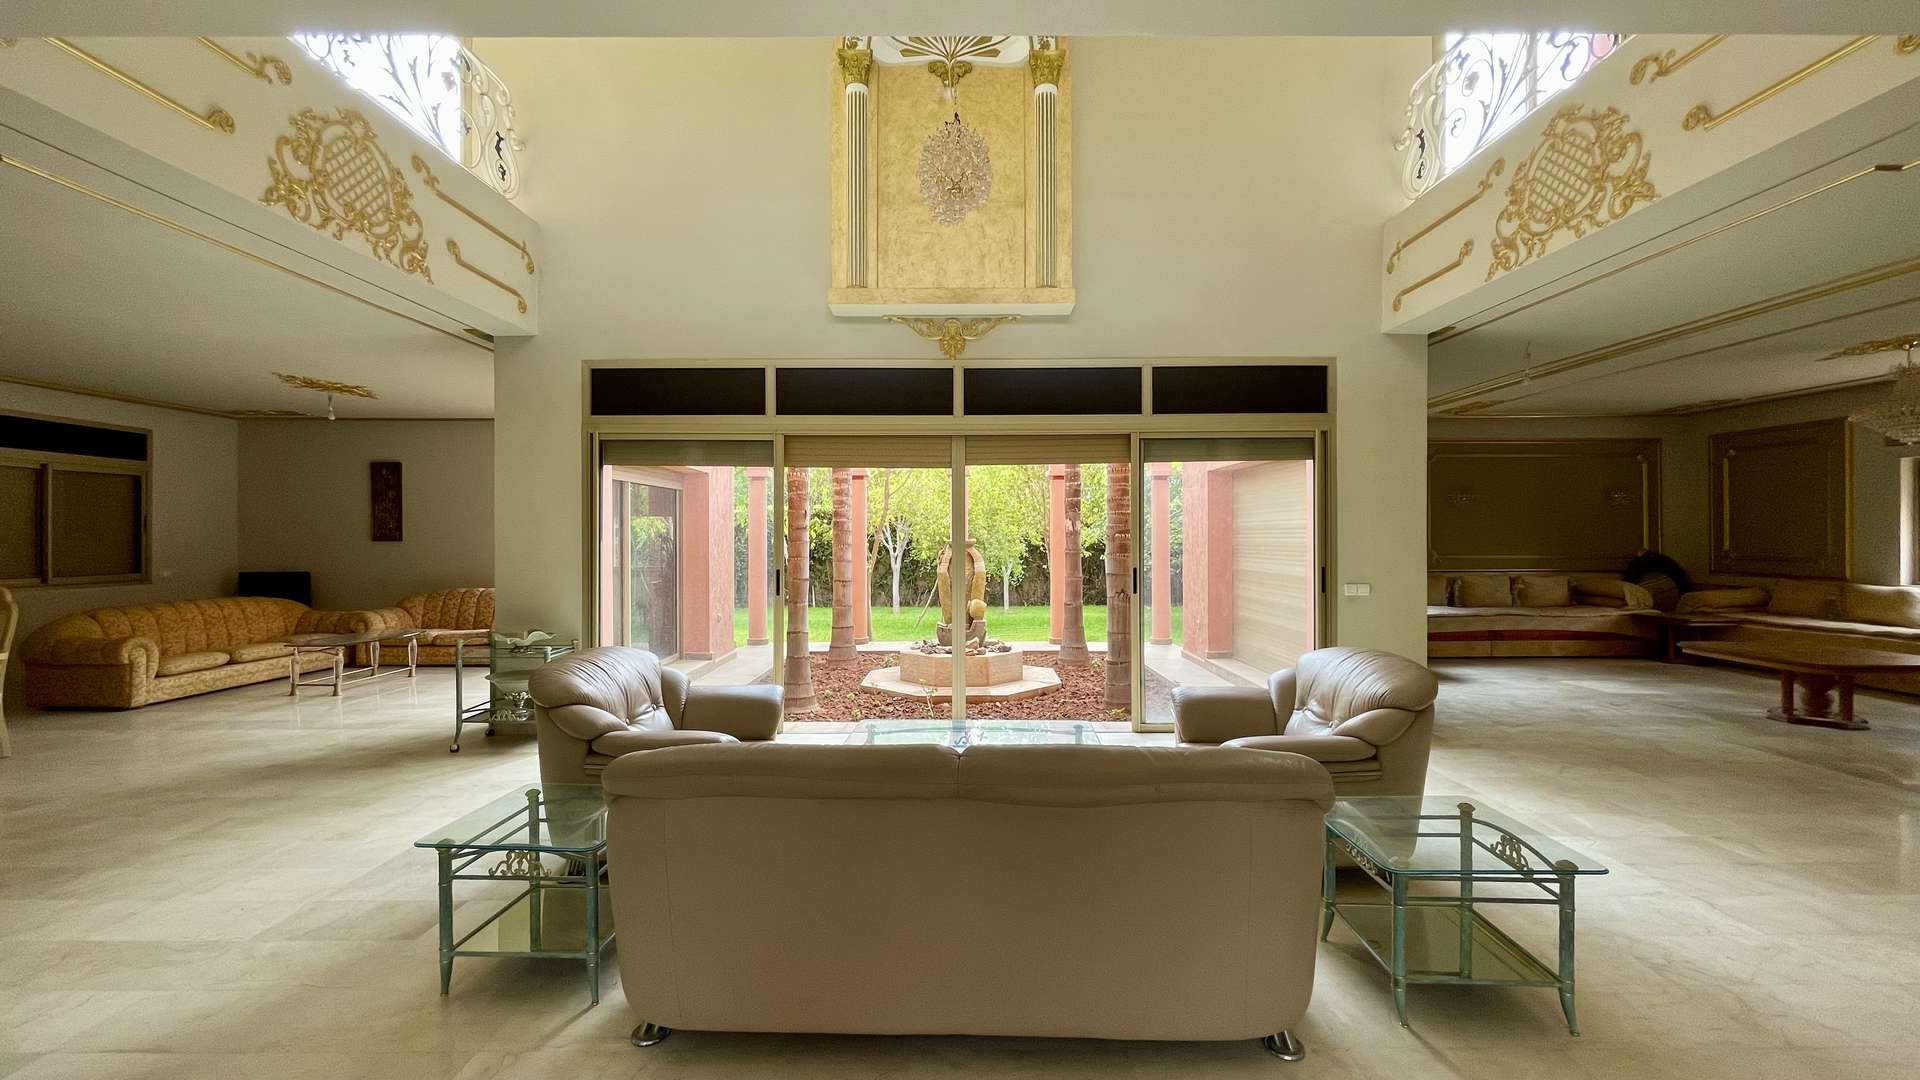 Vente,Villa,Villa Privée de Prestige 5 chambres bien située à proximité du centre de Marrakech,Marrakech,Av. Mohamed VI